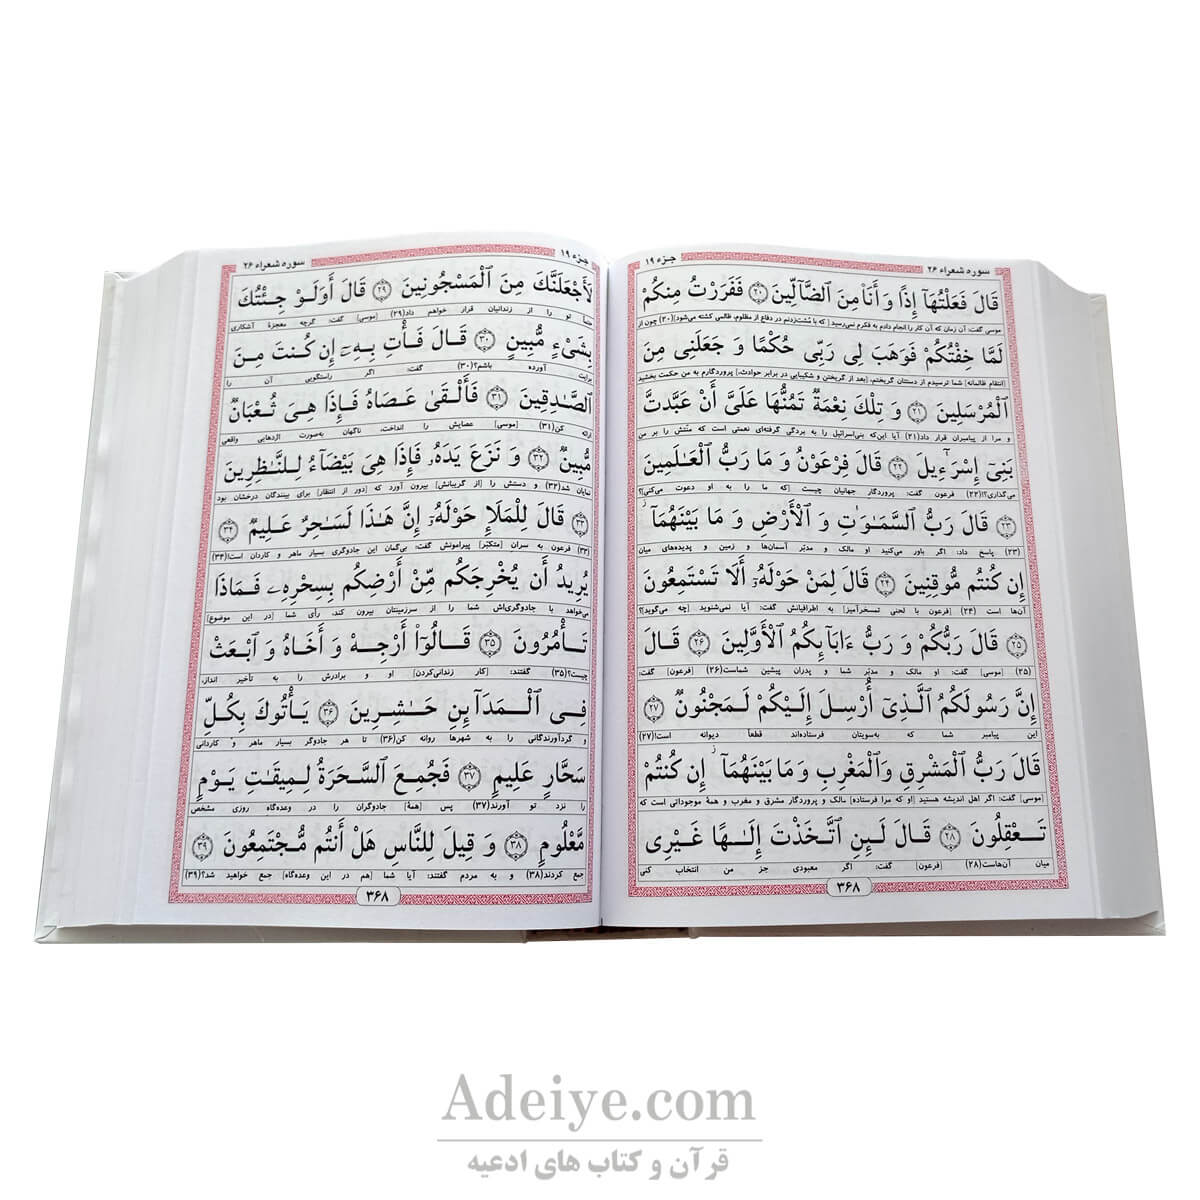 قرآن کامپیوتری مبین با خط بسیار خوانا و درشت خط